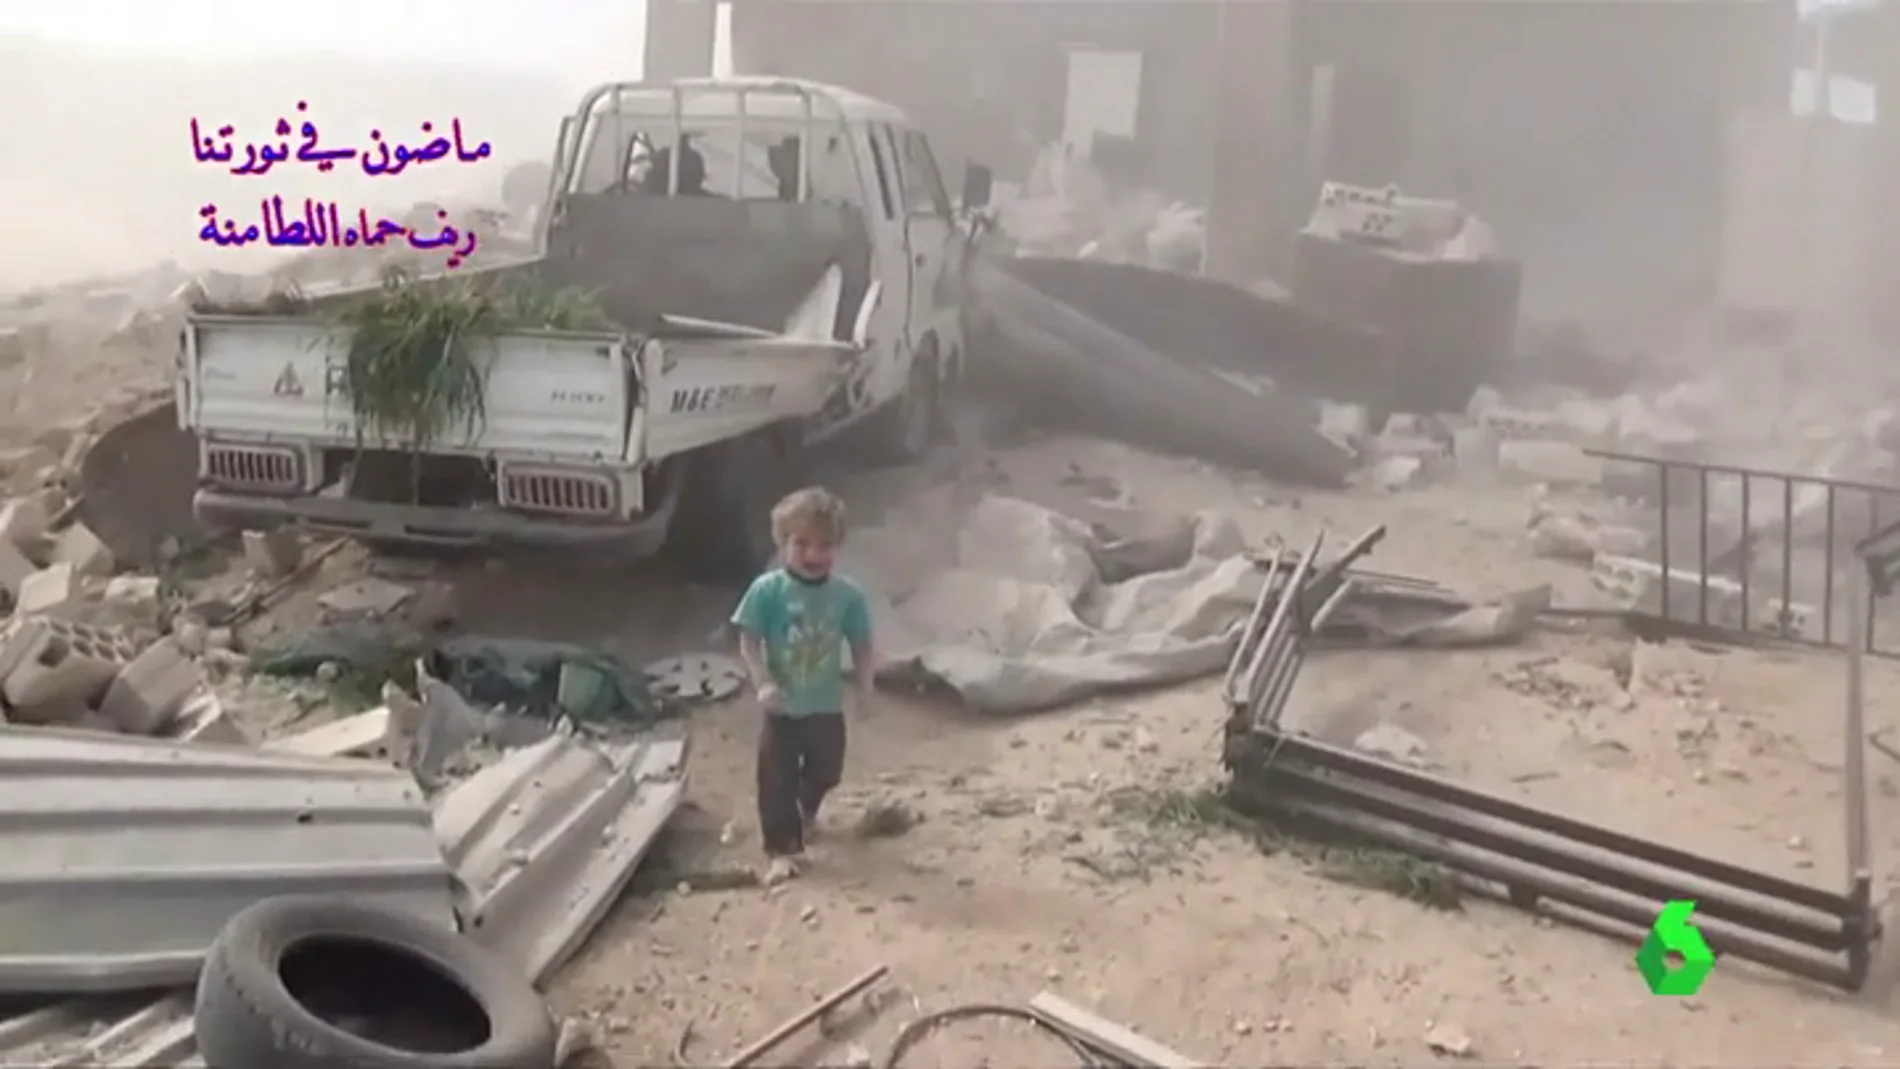 El pequeño llora mientras escapa de los escombros que han dejado el bombardeo en Siria